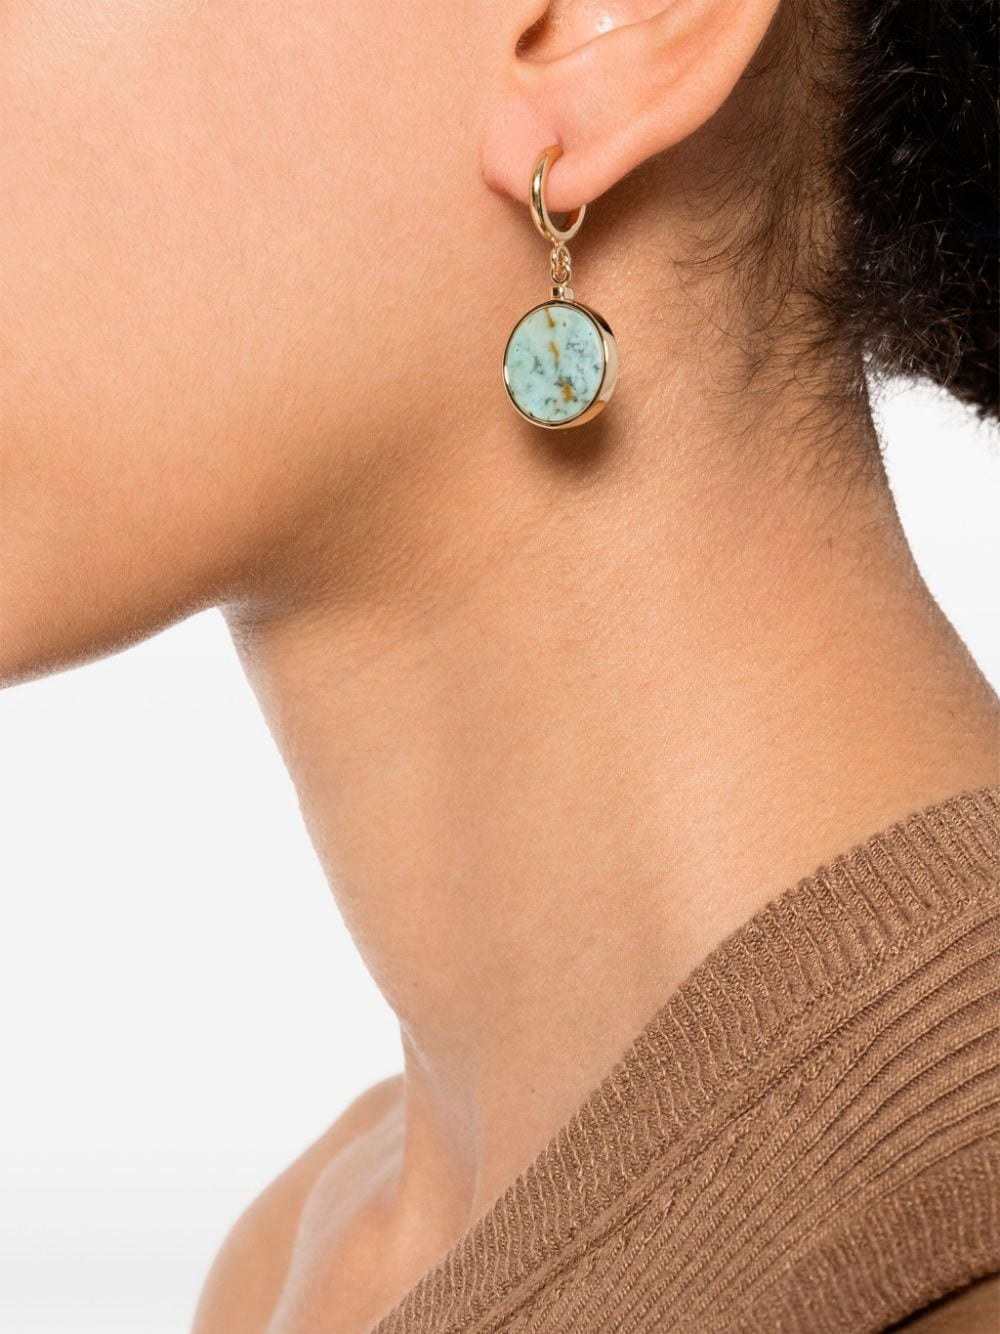 Casablaca earrings